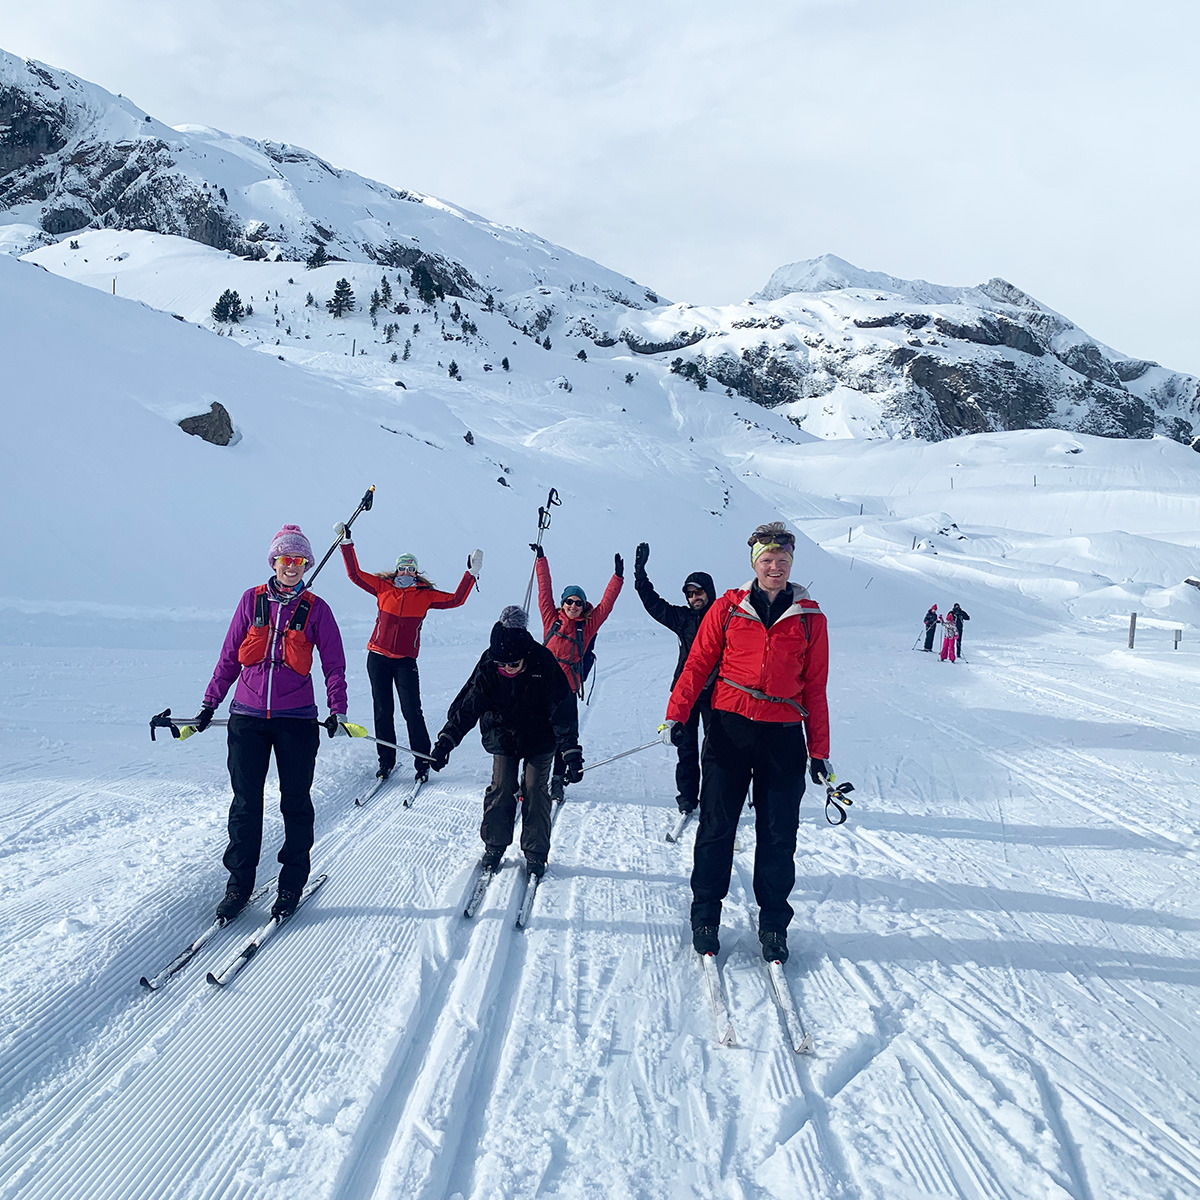 TRIBU: Especial familias y particulares. Curso colectivo de esquí nórdico a precio reducido